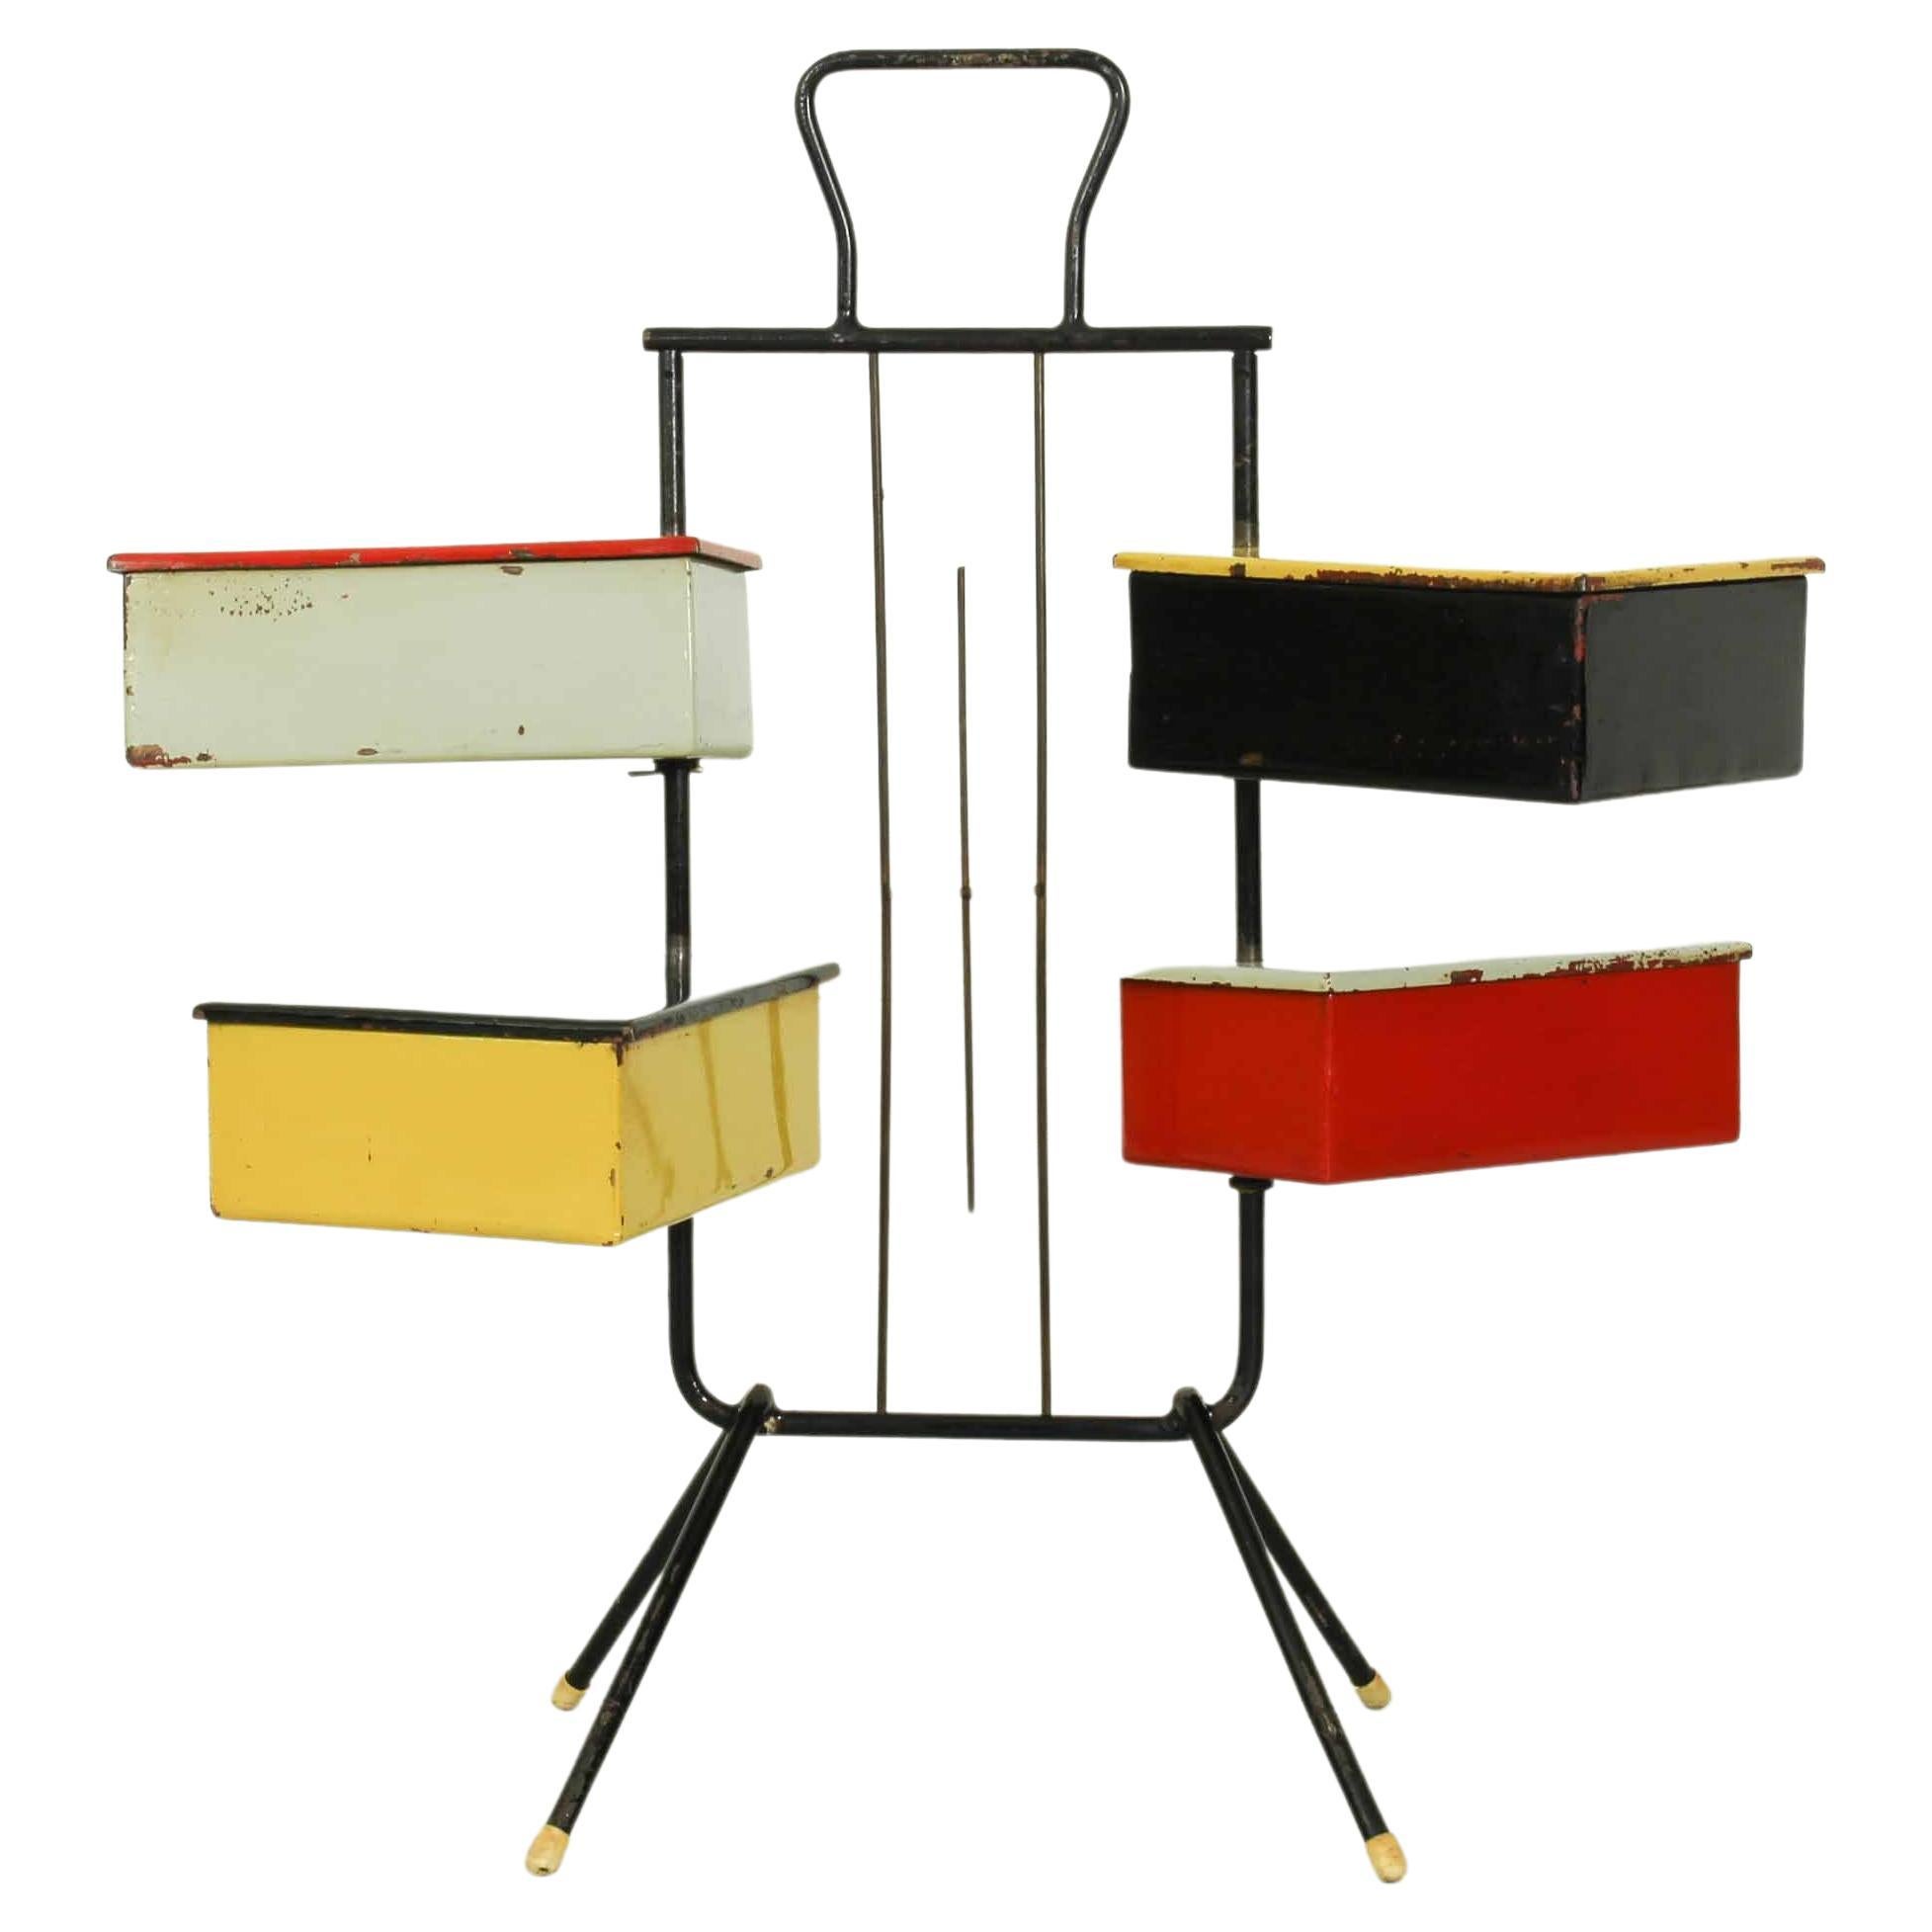 Ce meuble de couture des années 1950 avec 4 boîtes a été conçu par Joos Teders pour Metalux. Il comporte quatre boîtes métalliques colorées (qui peuvent pivoter autour du support métallique), ce qui donne un style Rietveld à cet objet. Cet article